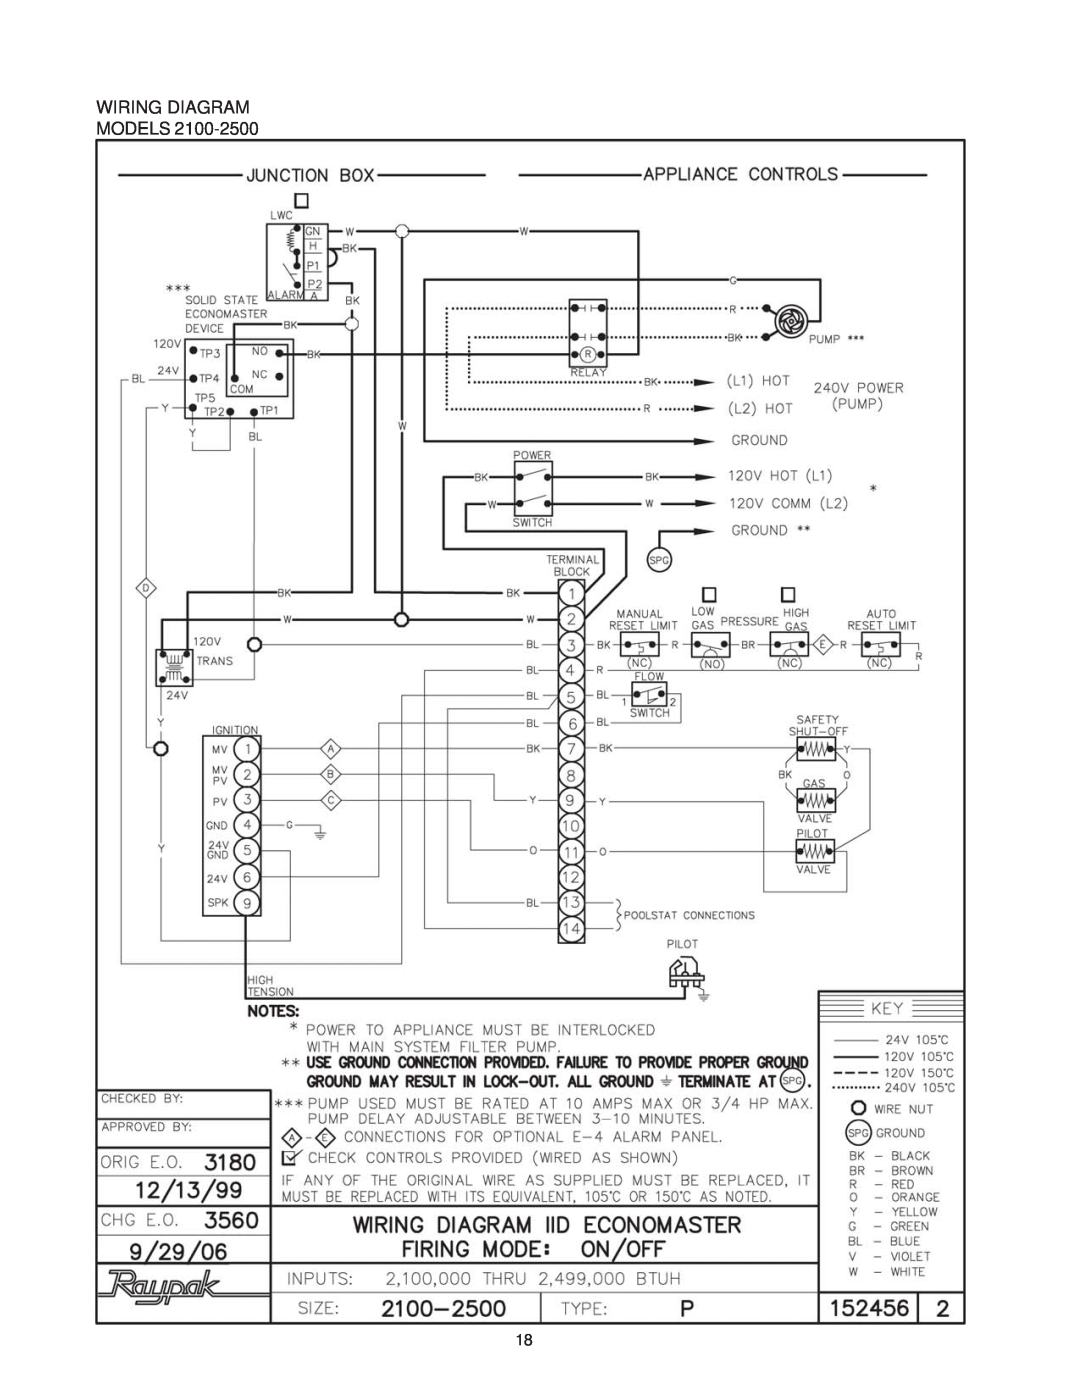 Raypak 1287-1758, 2100-4001, P-926, P-1826, P-2100, P-4001, P926, P1826, P2100, P4001 manual Wiring Diagram Models 